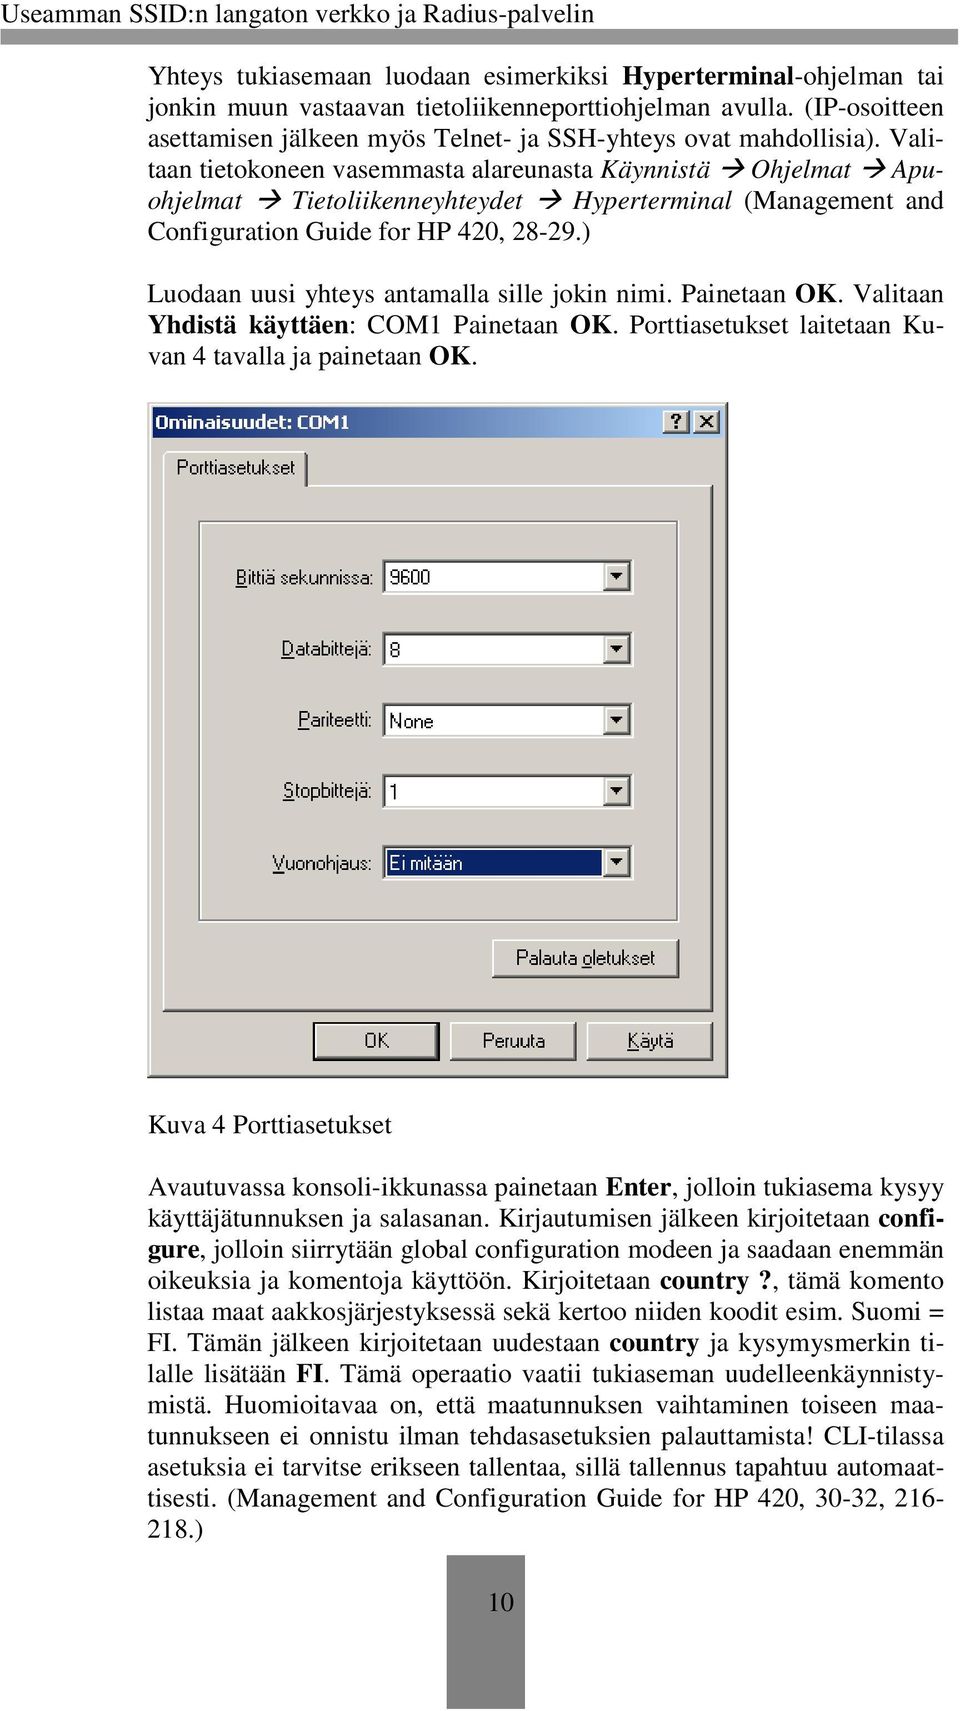 Valitaan tietokoneen vasemmasta alareunasta Käynnistä Ohjelmat Apuohjelmat Tietoliikenneyhteydet Hyperterminal (Management and Configuration Guide for HP 420, 28-29.